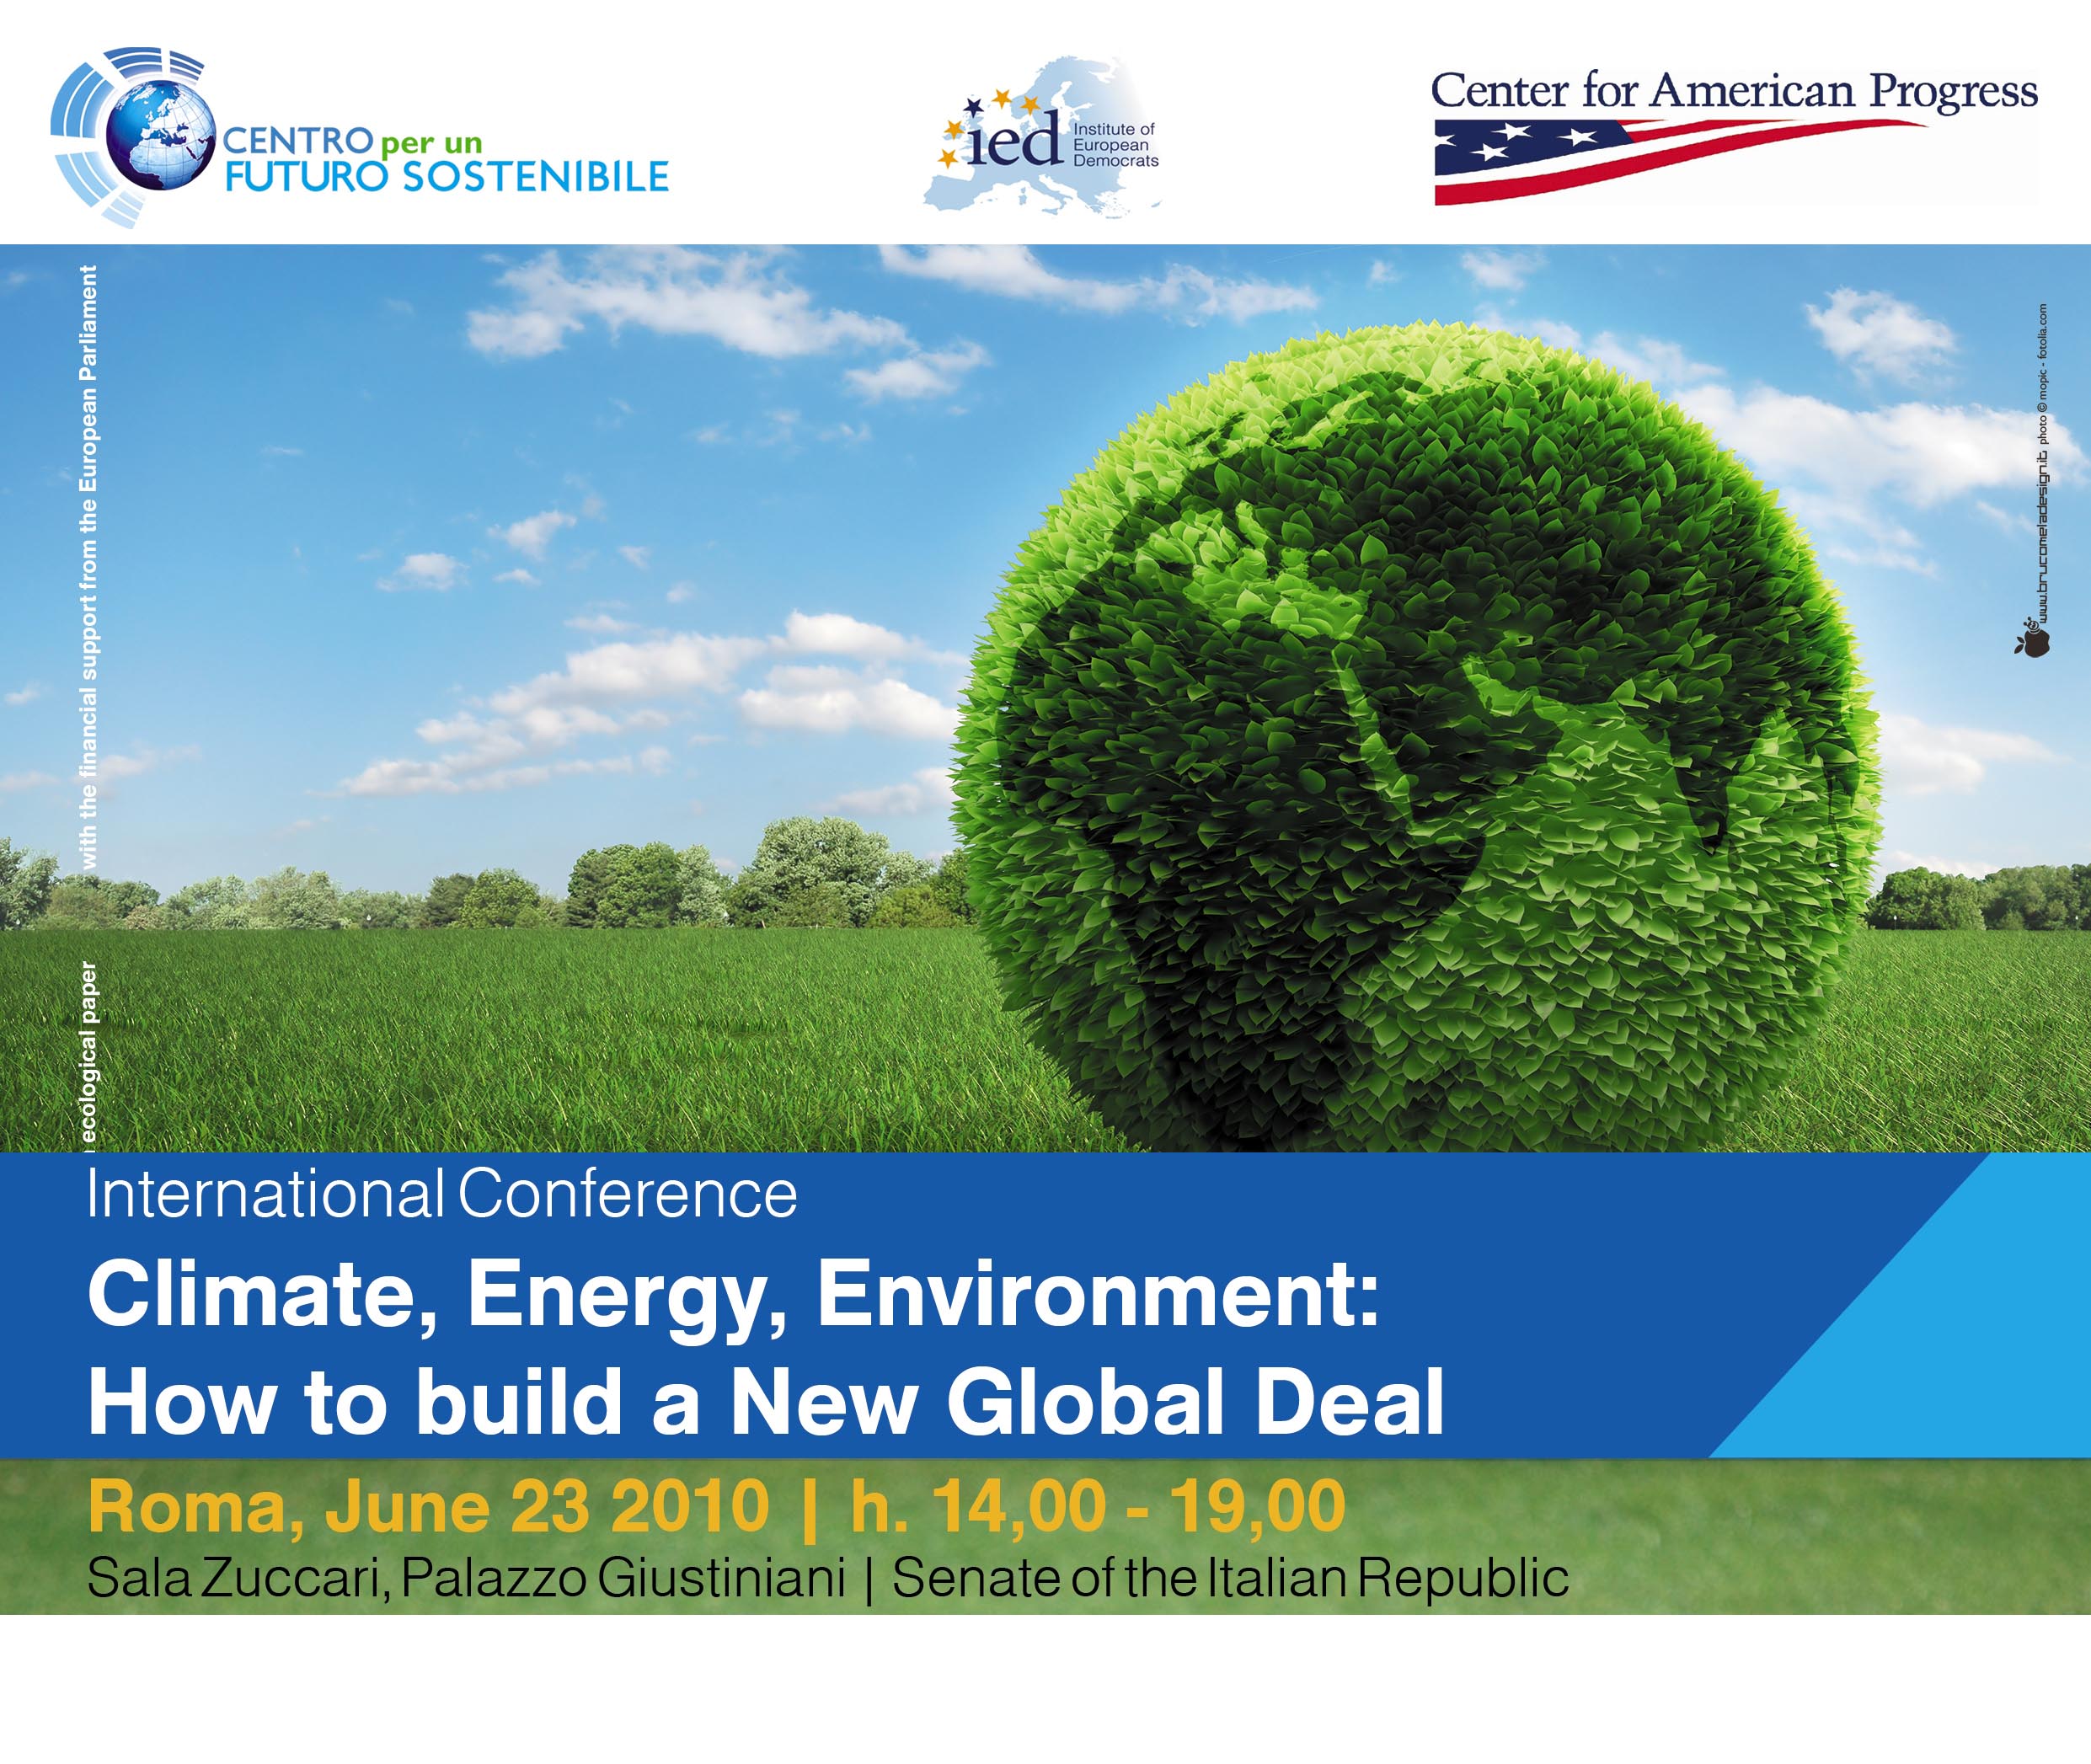 Conferenza Internazionale “Clima, Energia, Ambiente: come rilanciare il negoziato globale”